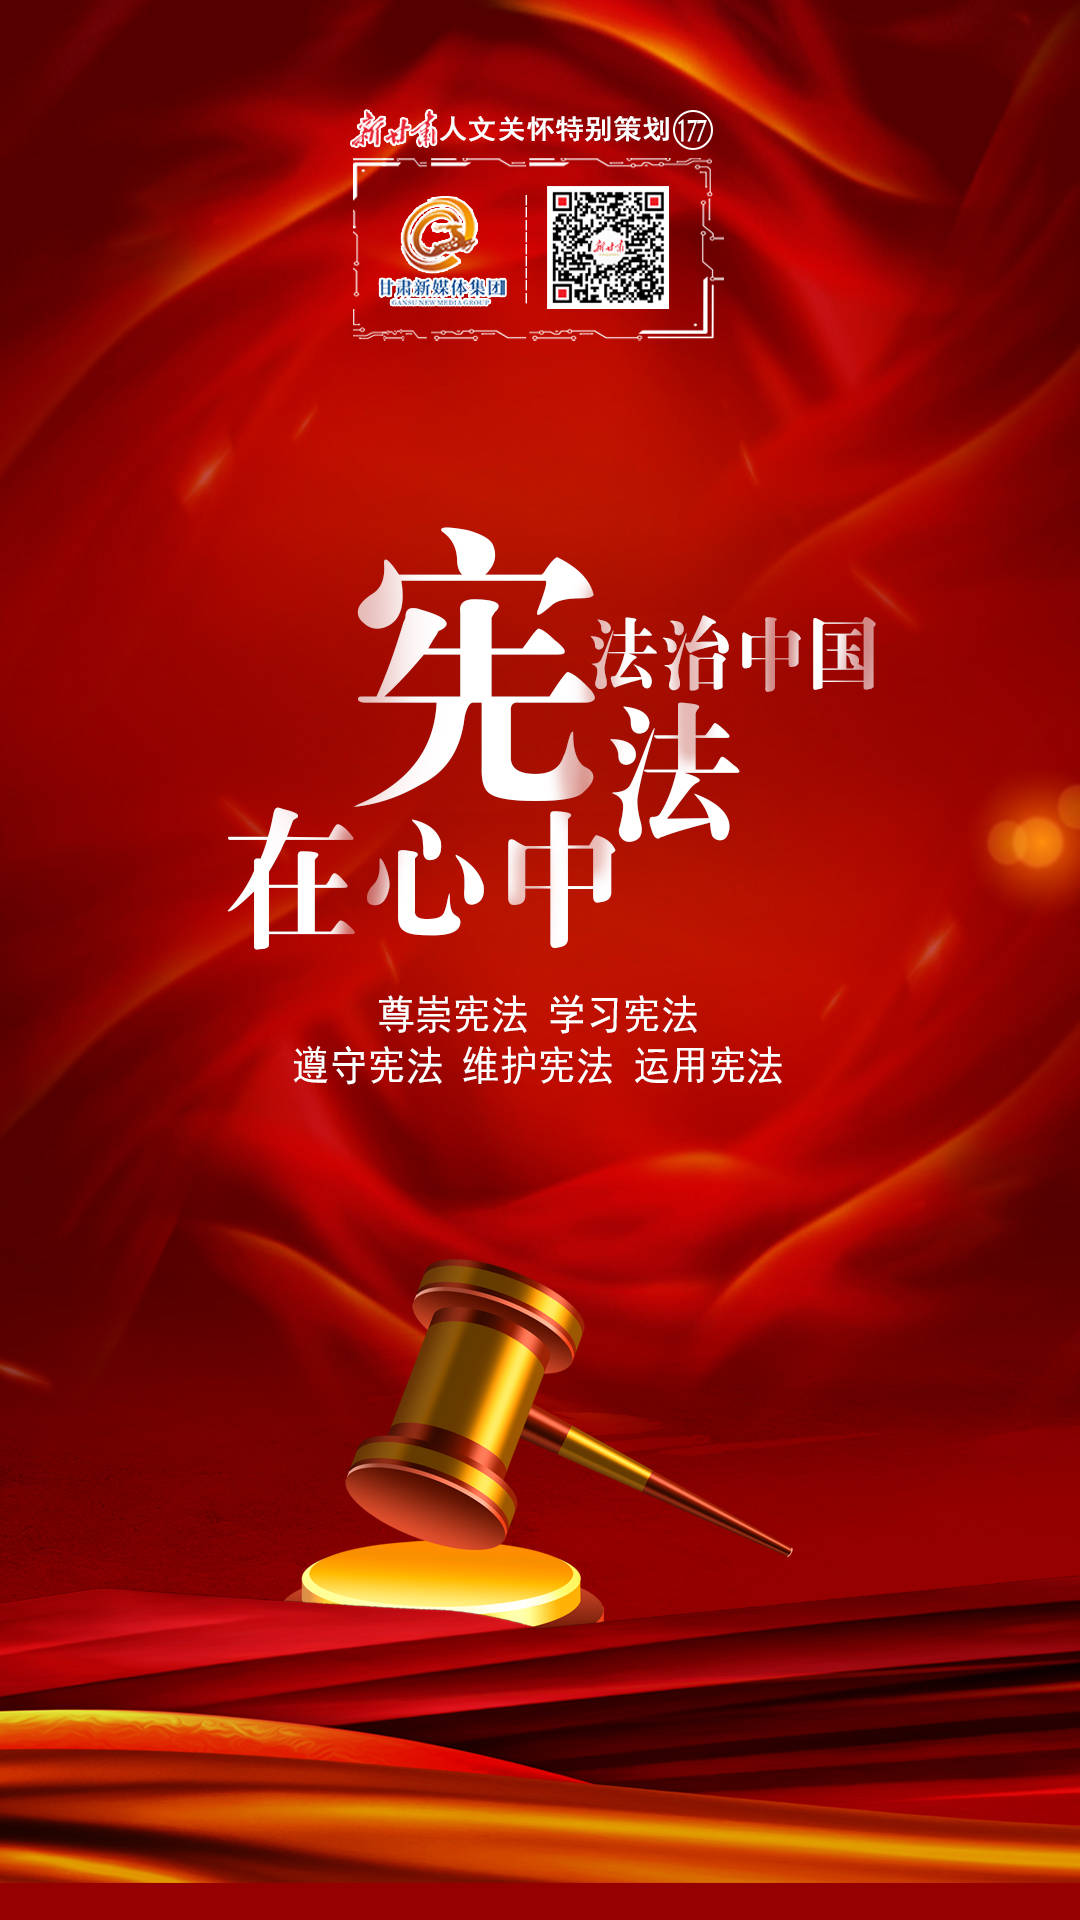 【微海报】新甘肃人文关怀特别策划——法治中国,宪法